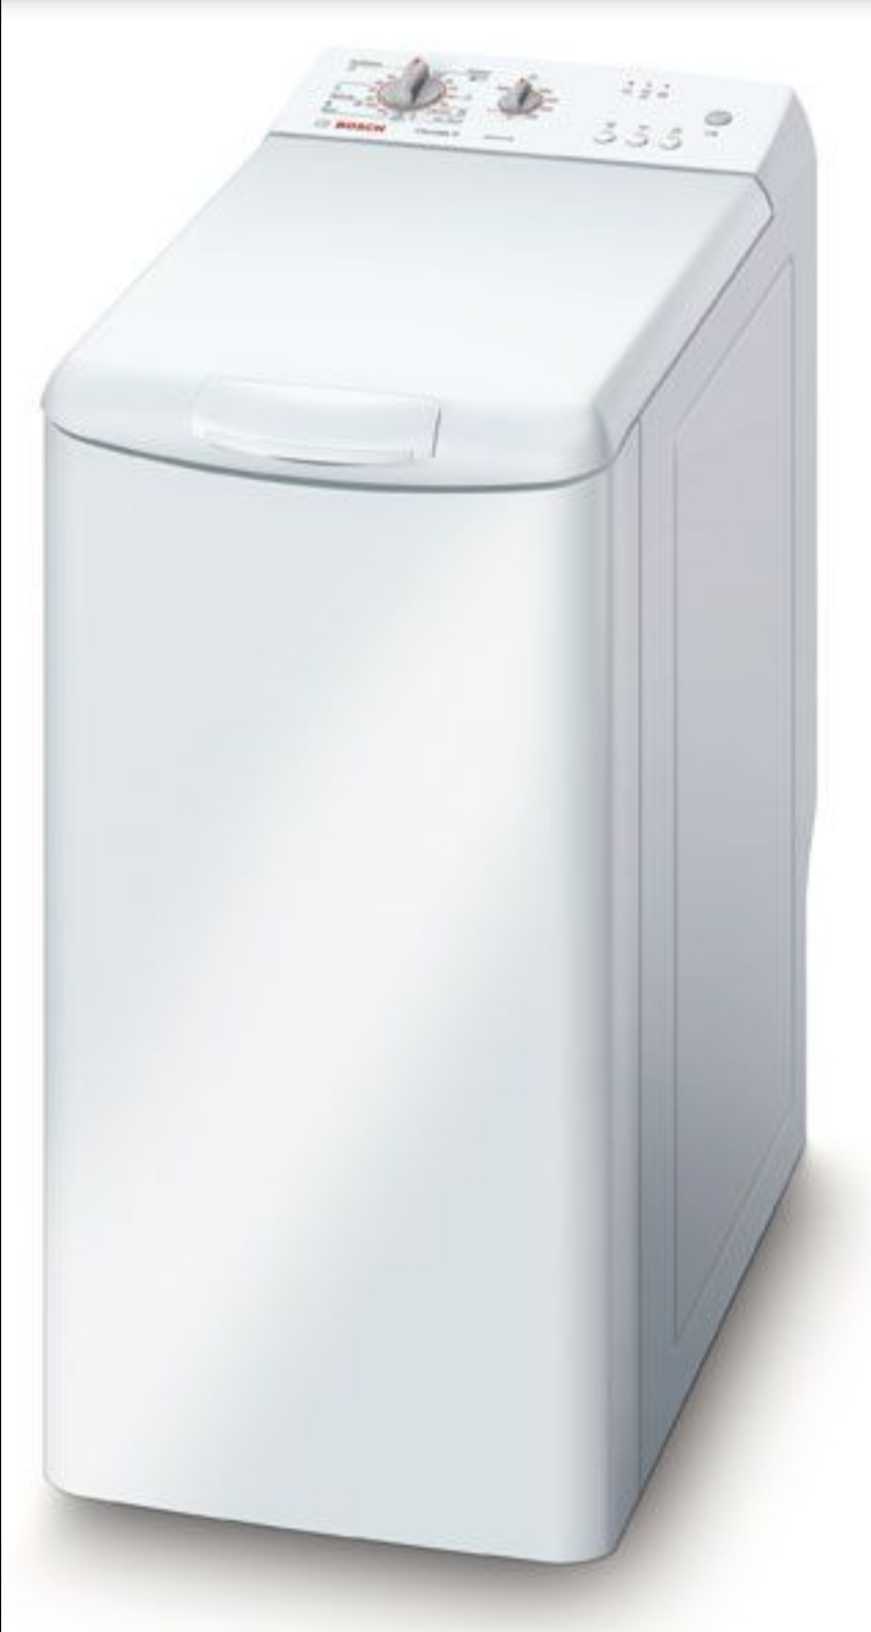 Bosch 5kg Washing Machine Top Load